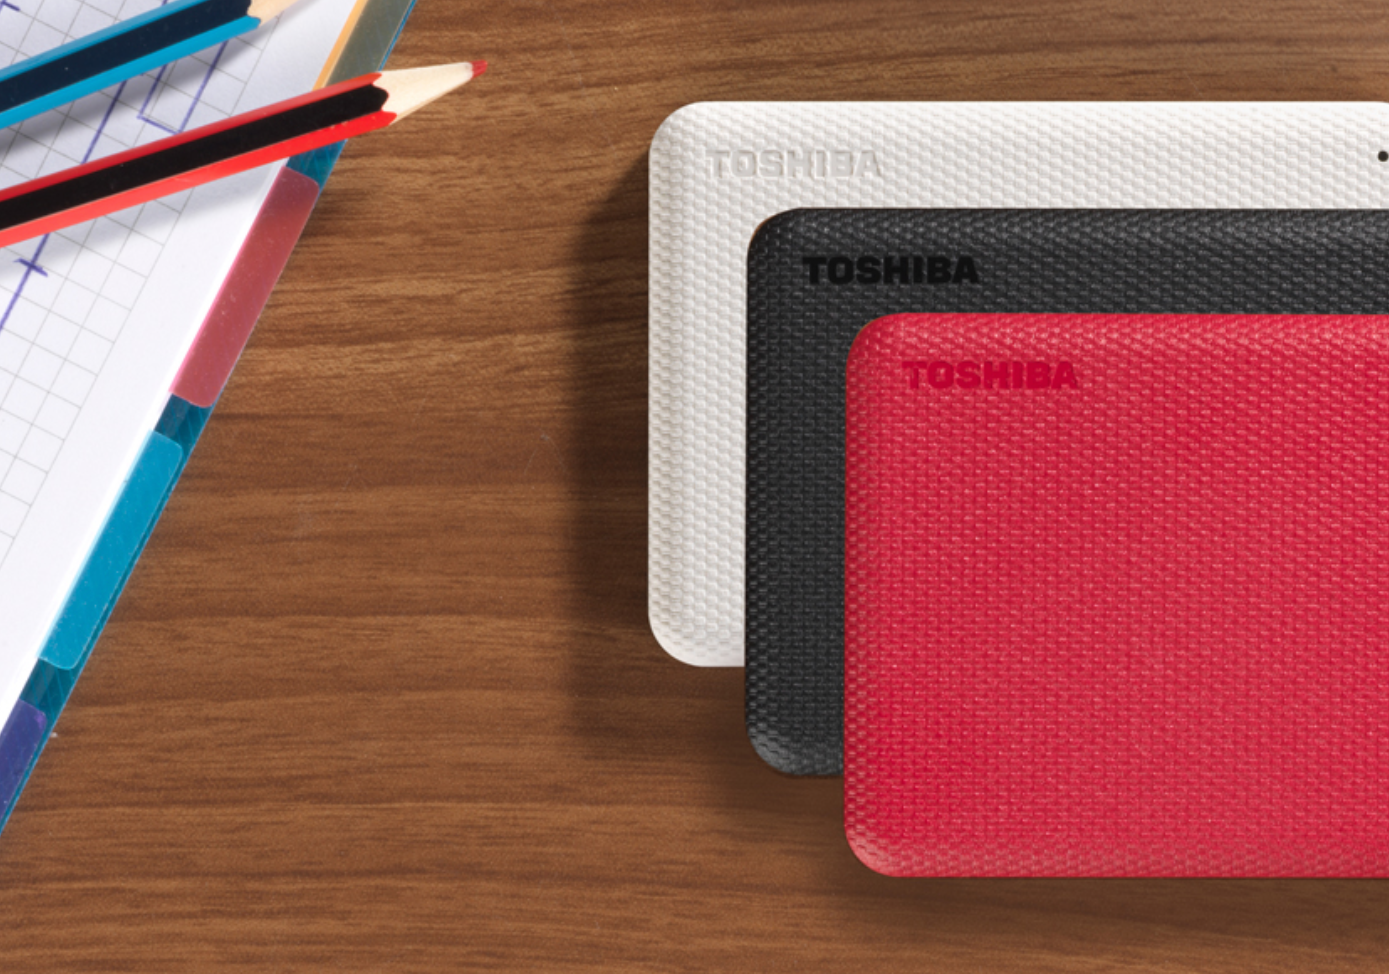 Dysk Toshiba Canvio Advanced 1TB czerwony graficzne przedstawienie dostępnych wersji kolorystycznych